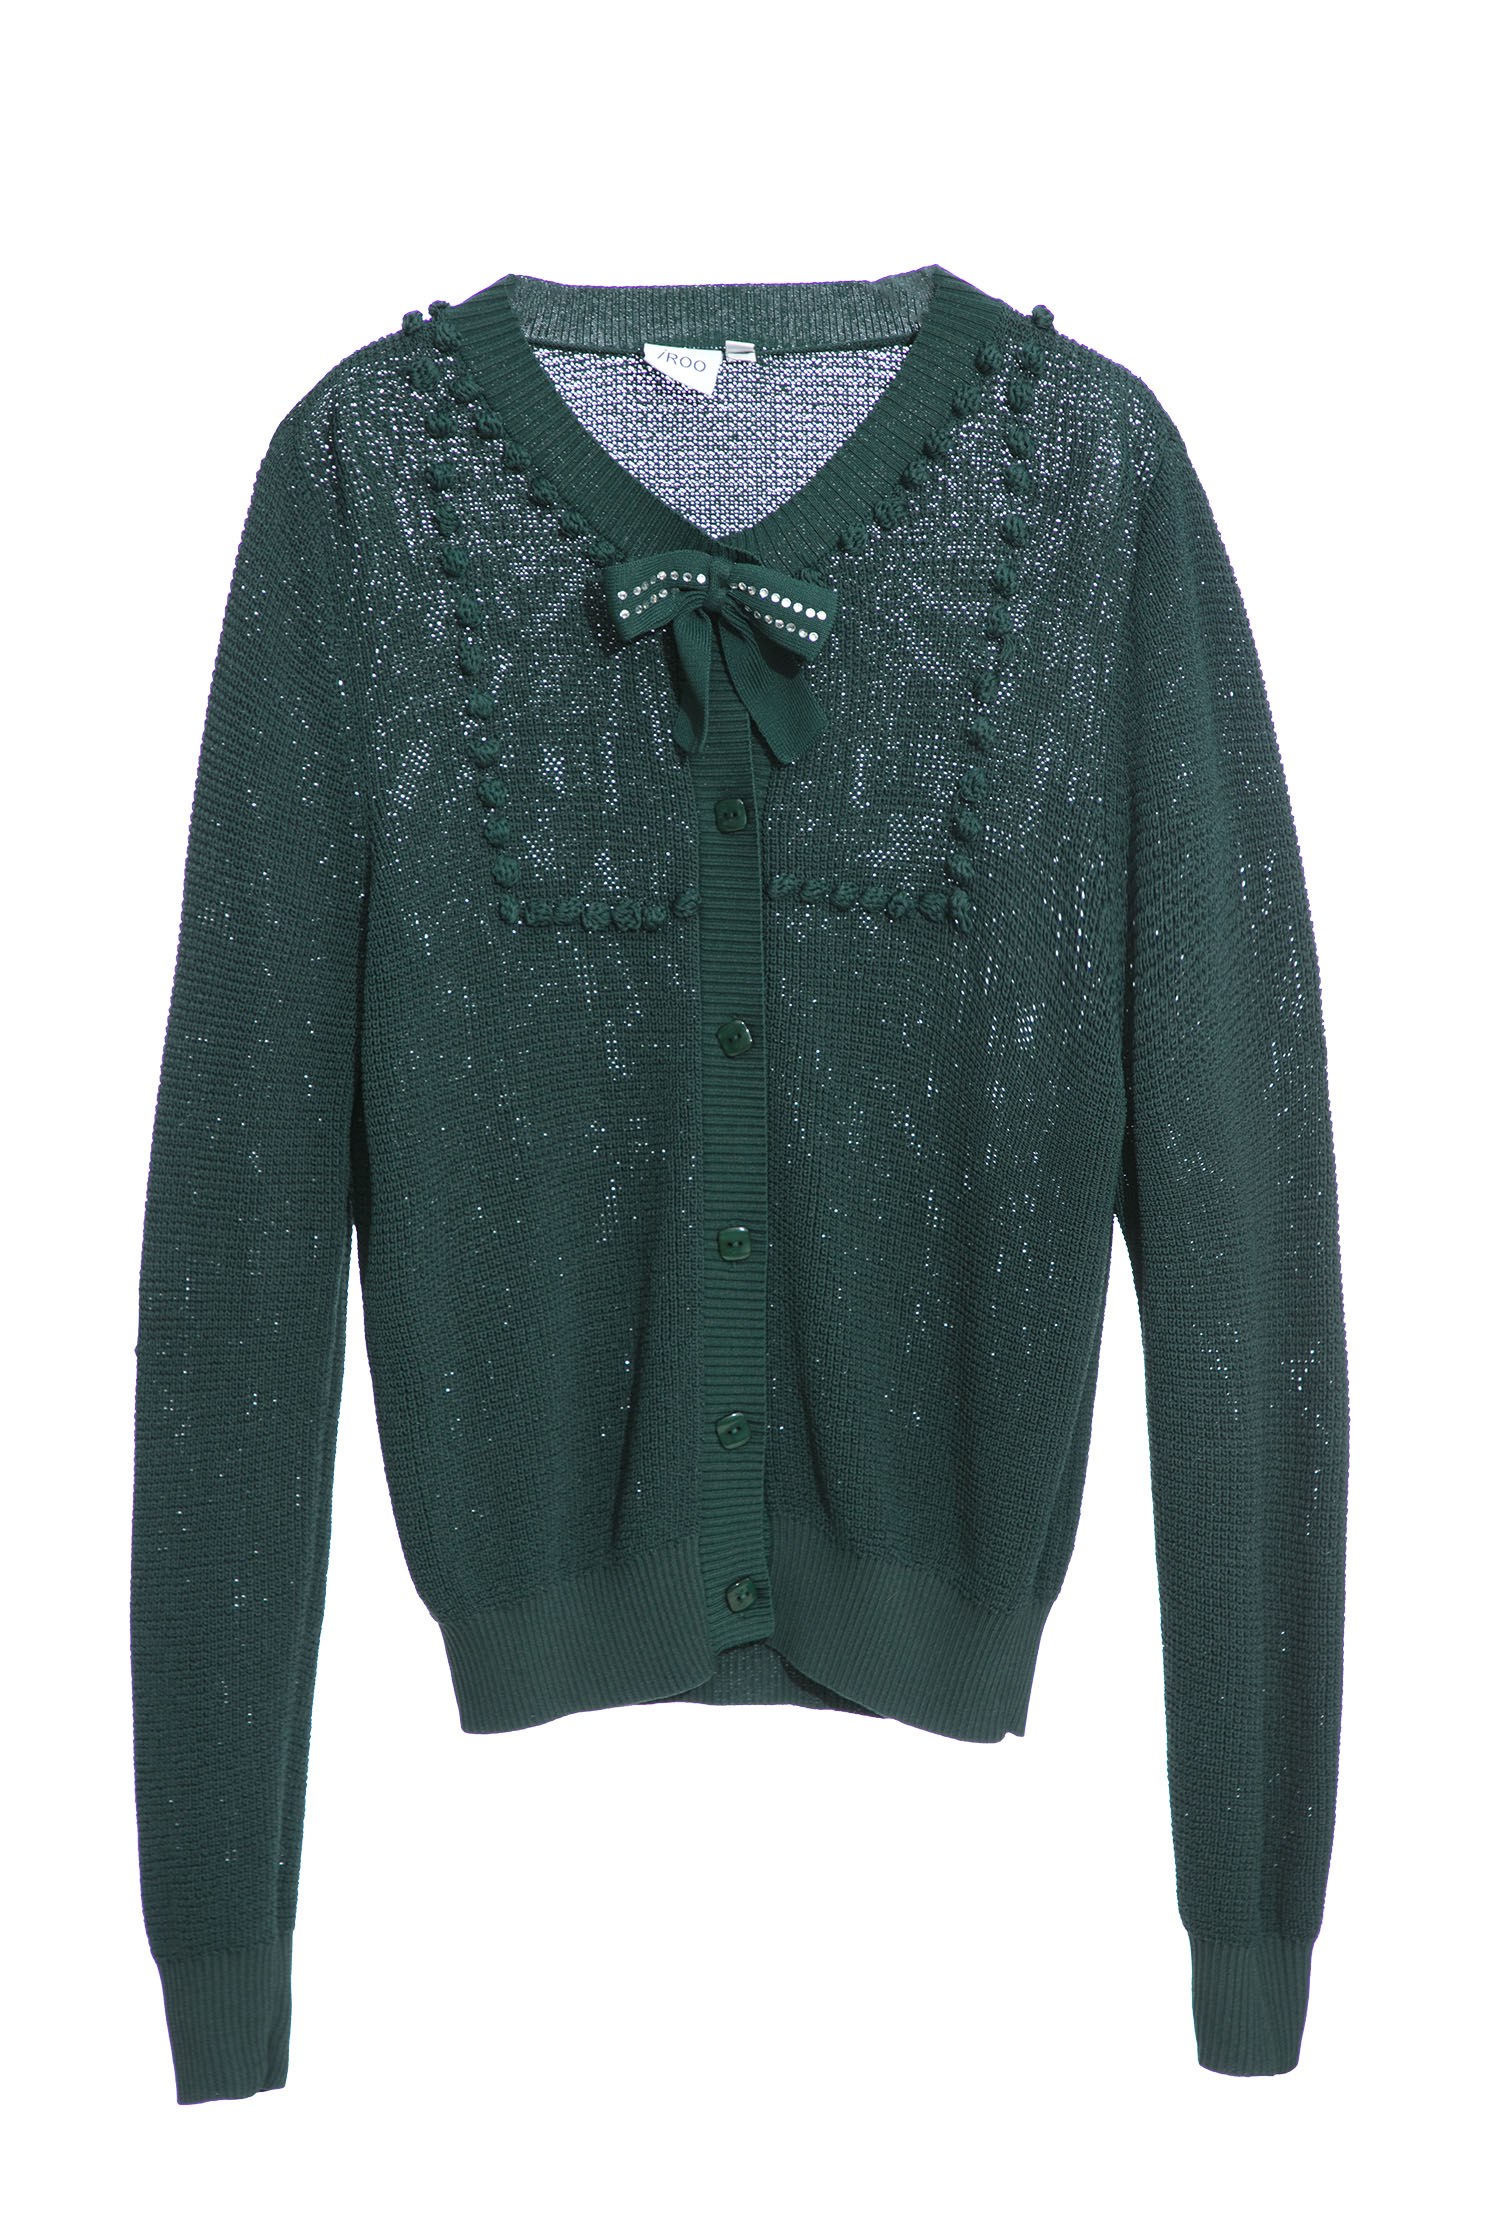 銅綠色針織外套銅綠色針織外套,保暖特輯,外套,春夏穿搭,純棉,蝴蝶結,針織,針織外套